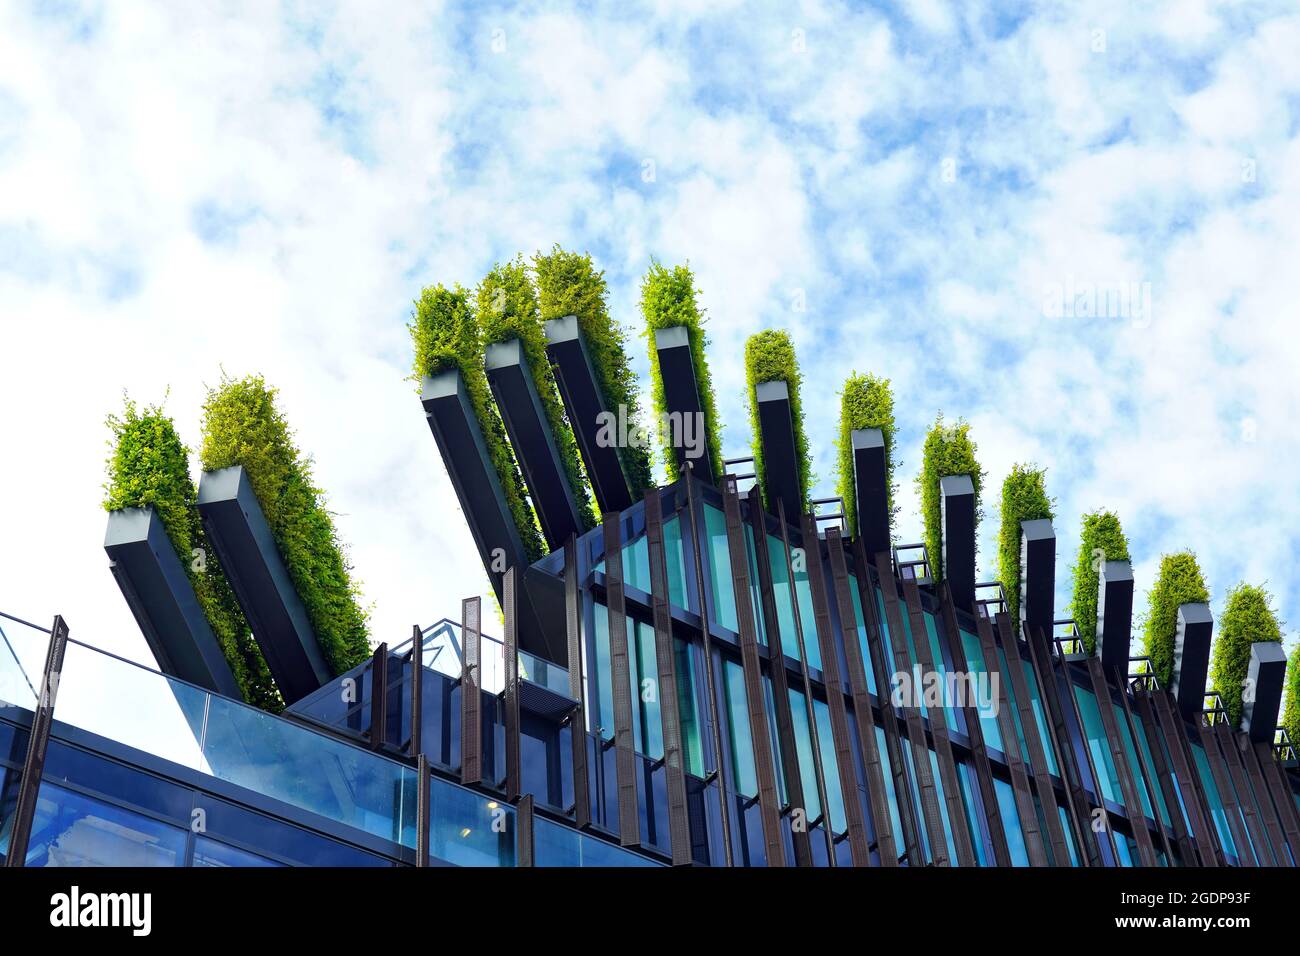 Grünes Stadtbaudach von Ingenhoven Architects in Düsseldorf - ein Projekt, um die Stadt grüner zu machen. Die Pflanzen dienen als natürliche Klimaanlage. Stockfoto